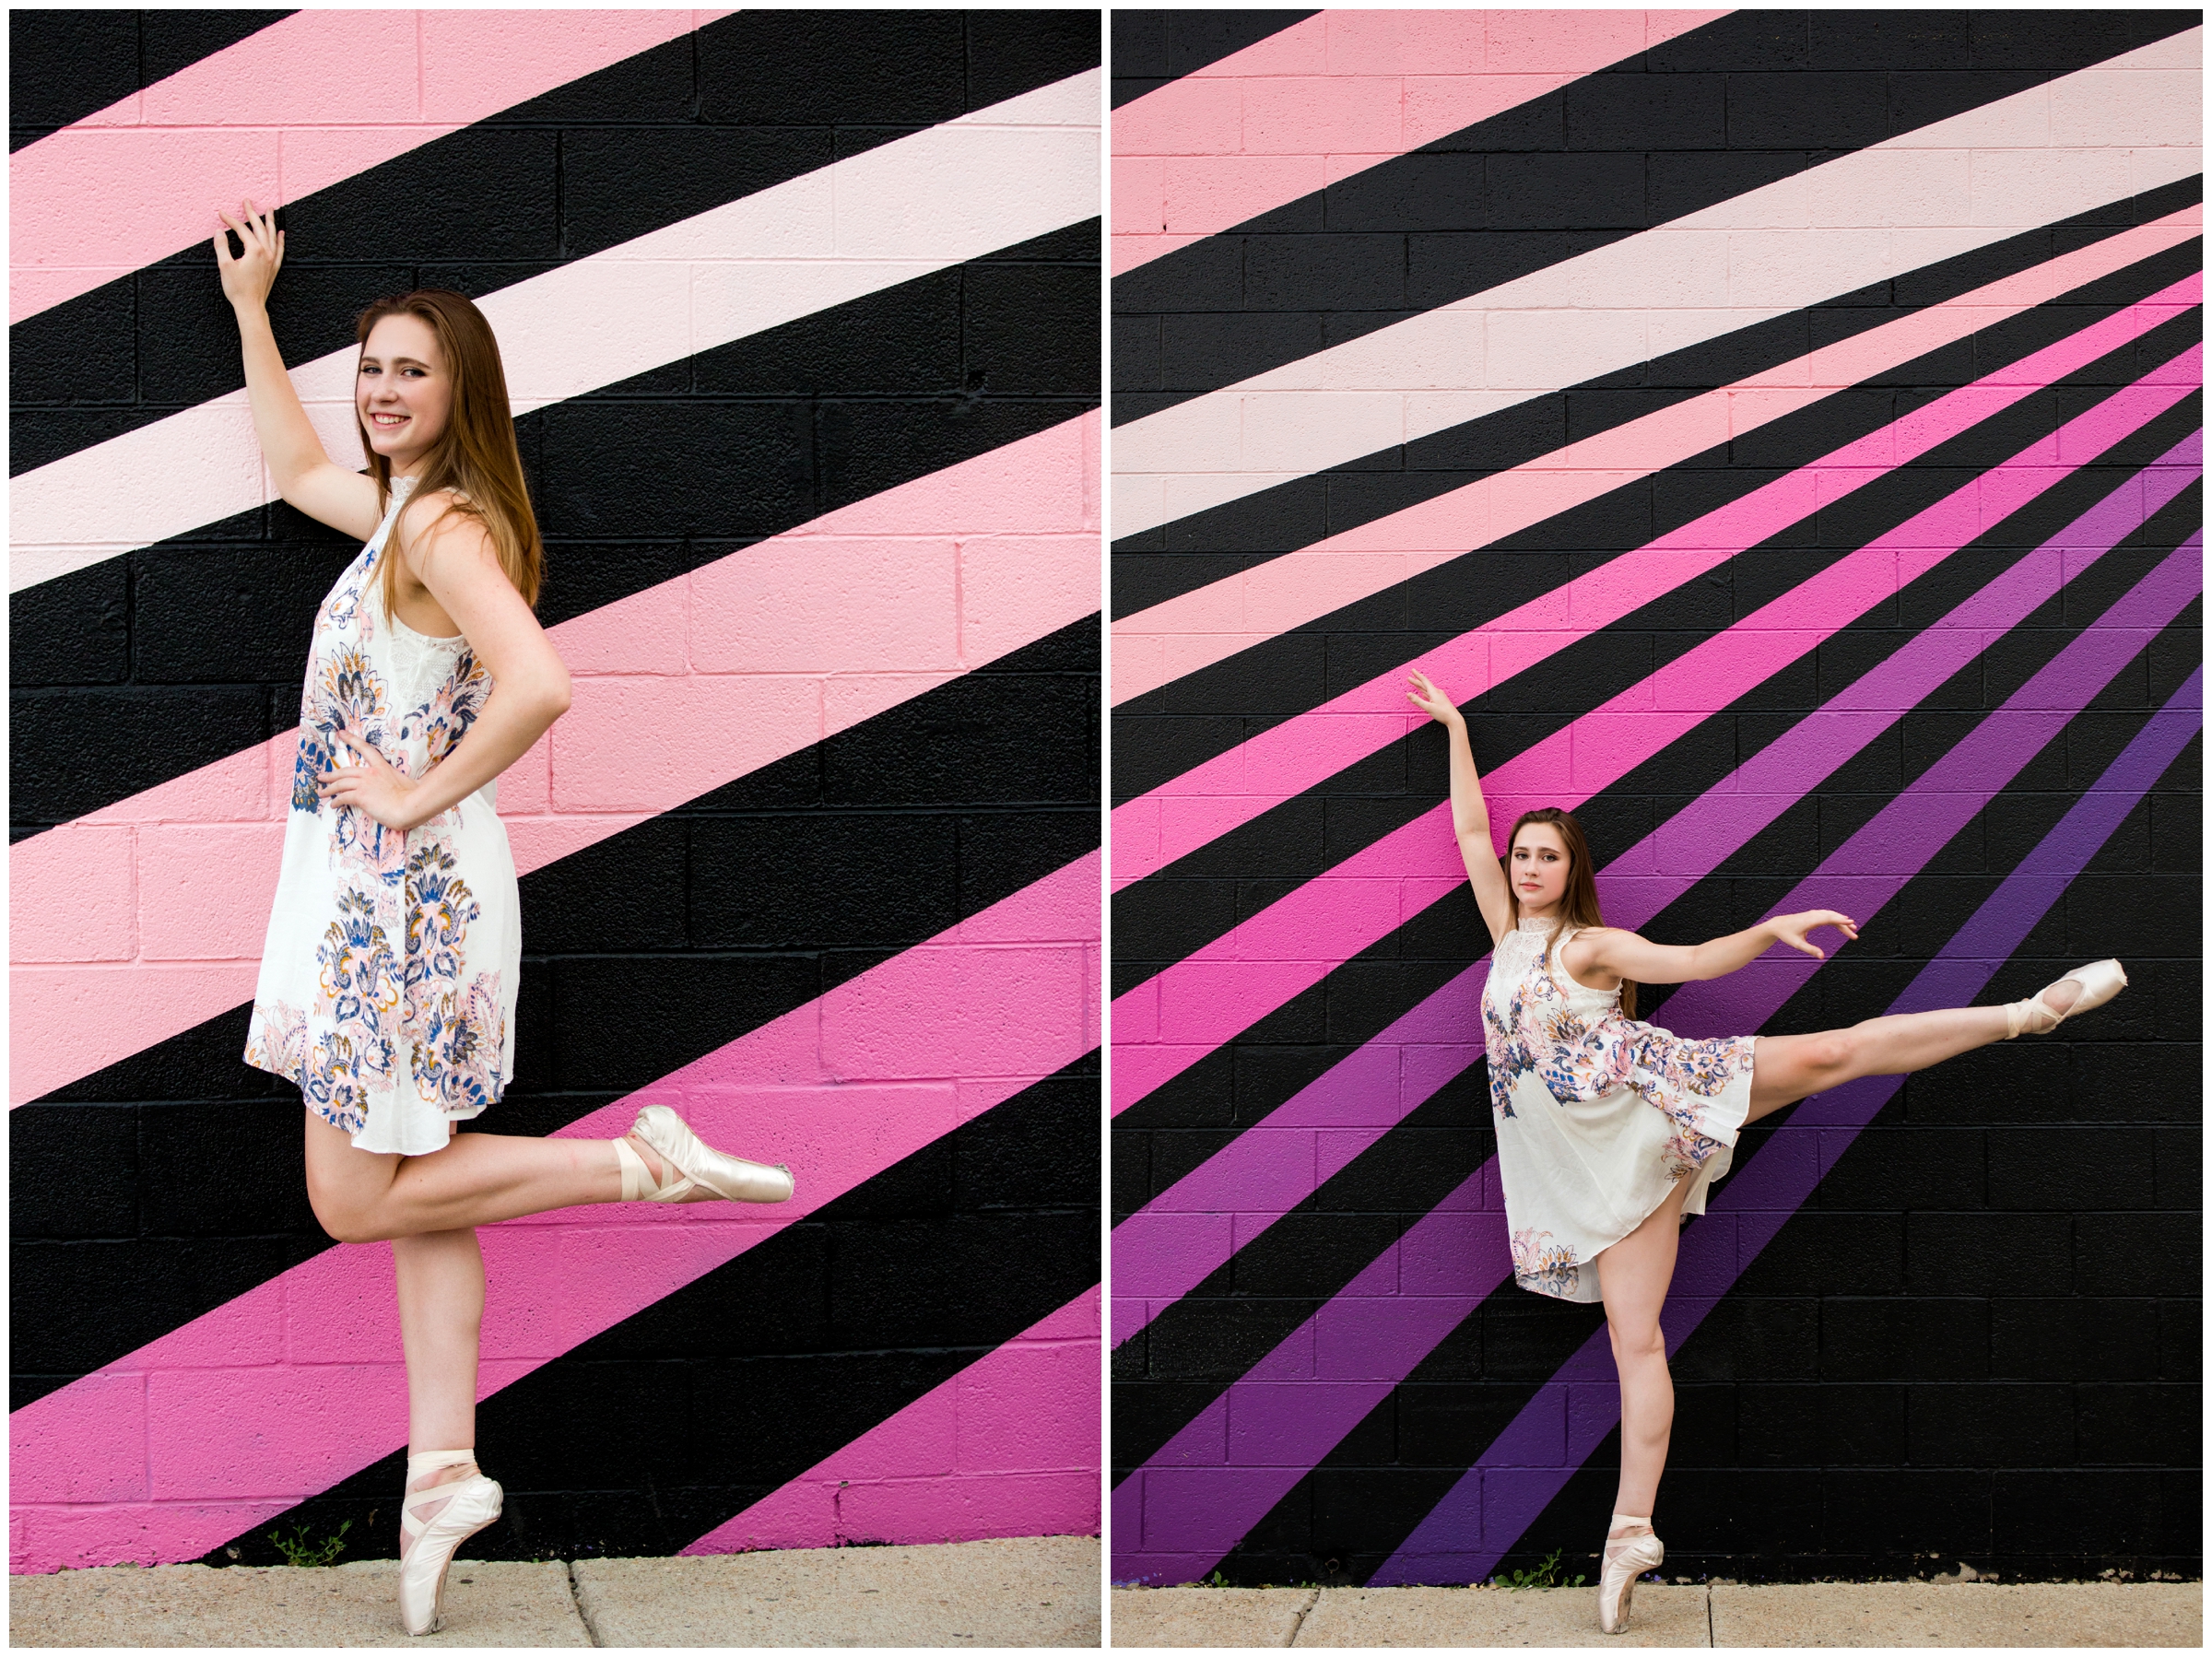 Boulder Colorado dancer senior photos against a colorful background 